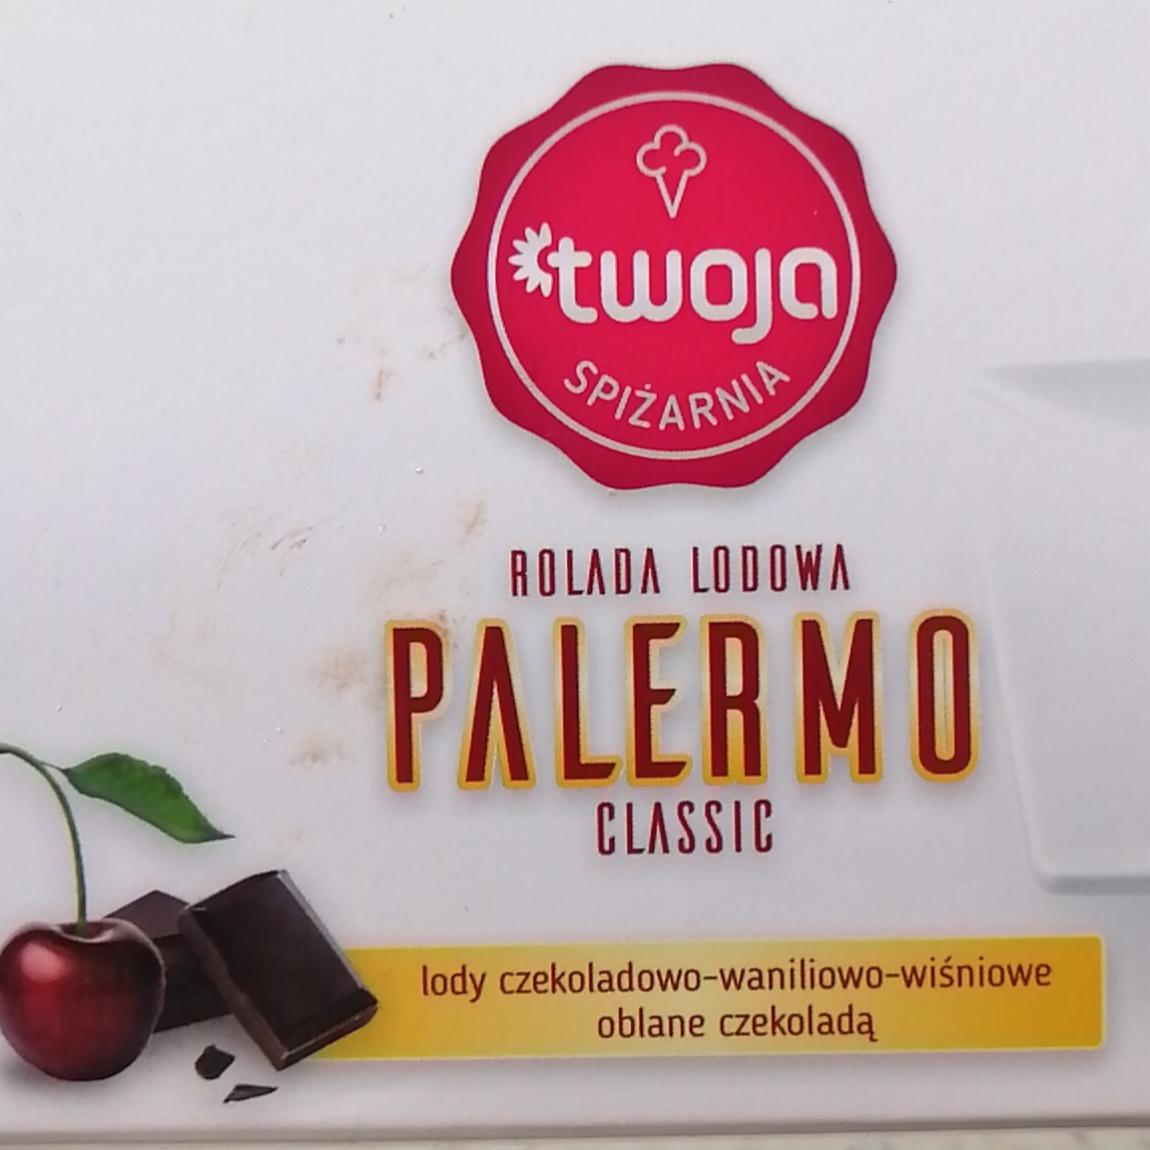 Zdjęcia - Rolada lodowa Palermo czekoladowo-waniliowo-wiśniowa oblana czekoladą Twoja Spiżarnia